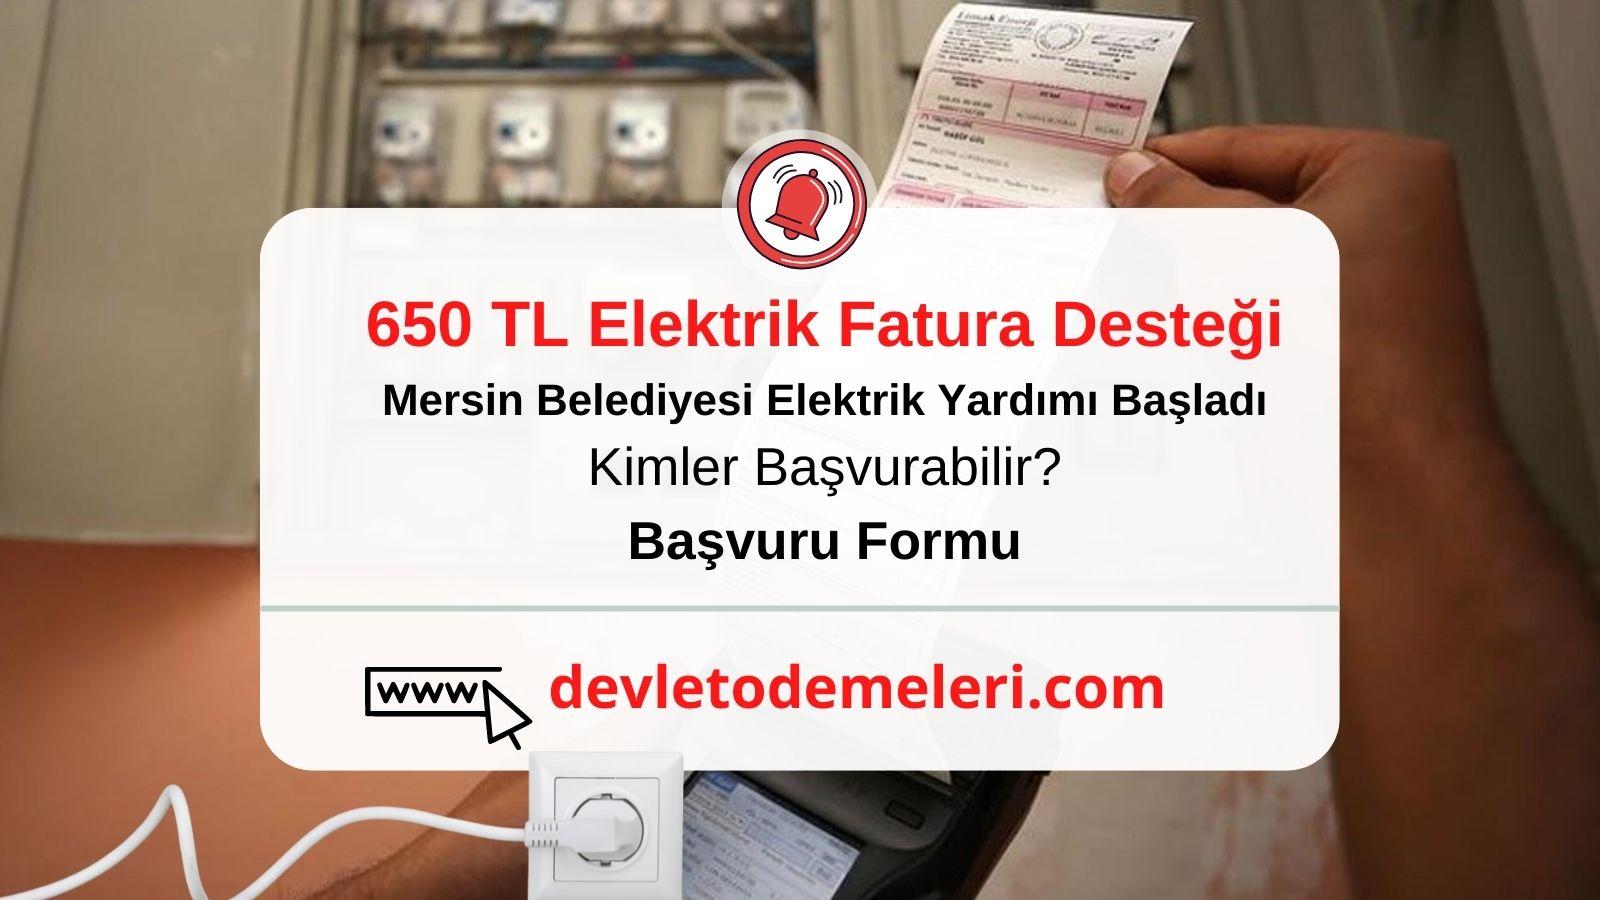 Mersin Büyükşehir belediyesi elektrik yardım başvurusu Başladı. 650 tl Elektrik Fatura Desteği